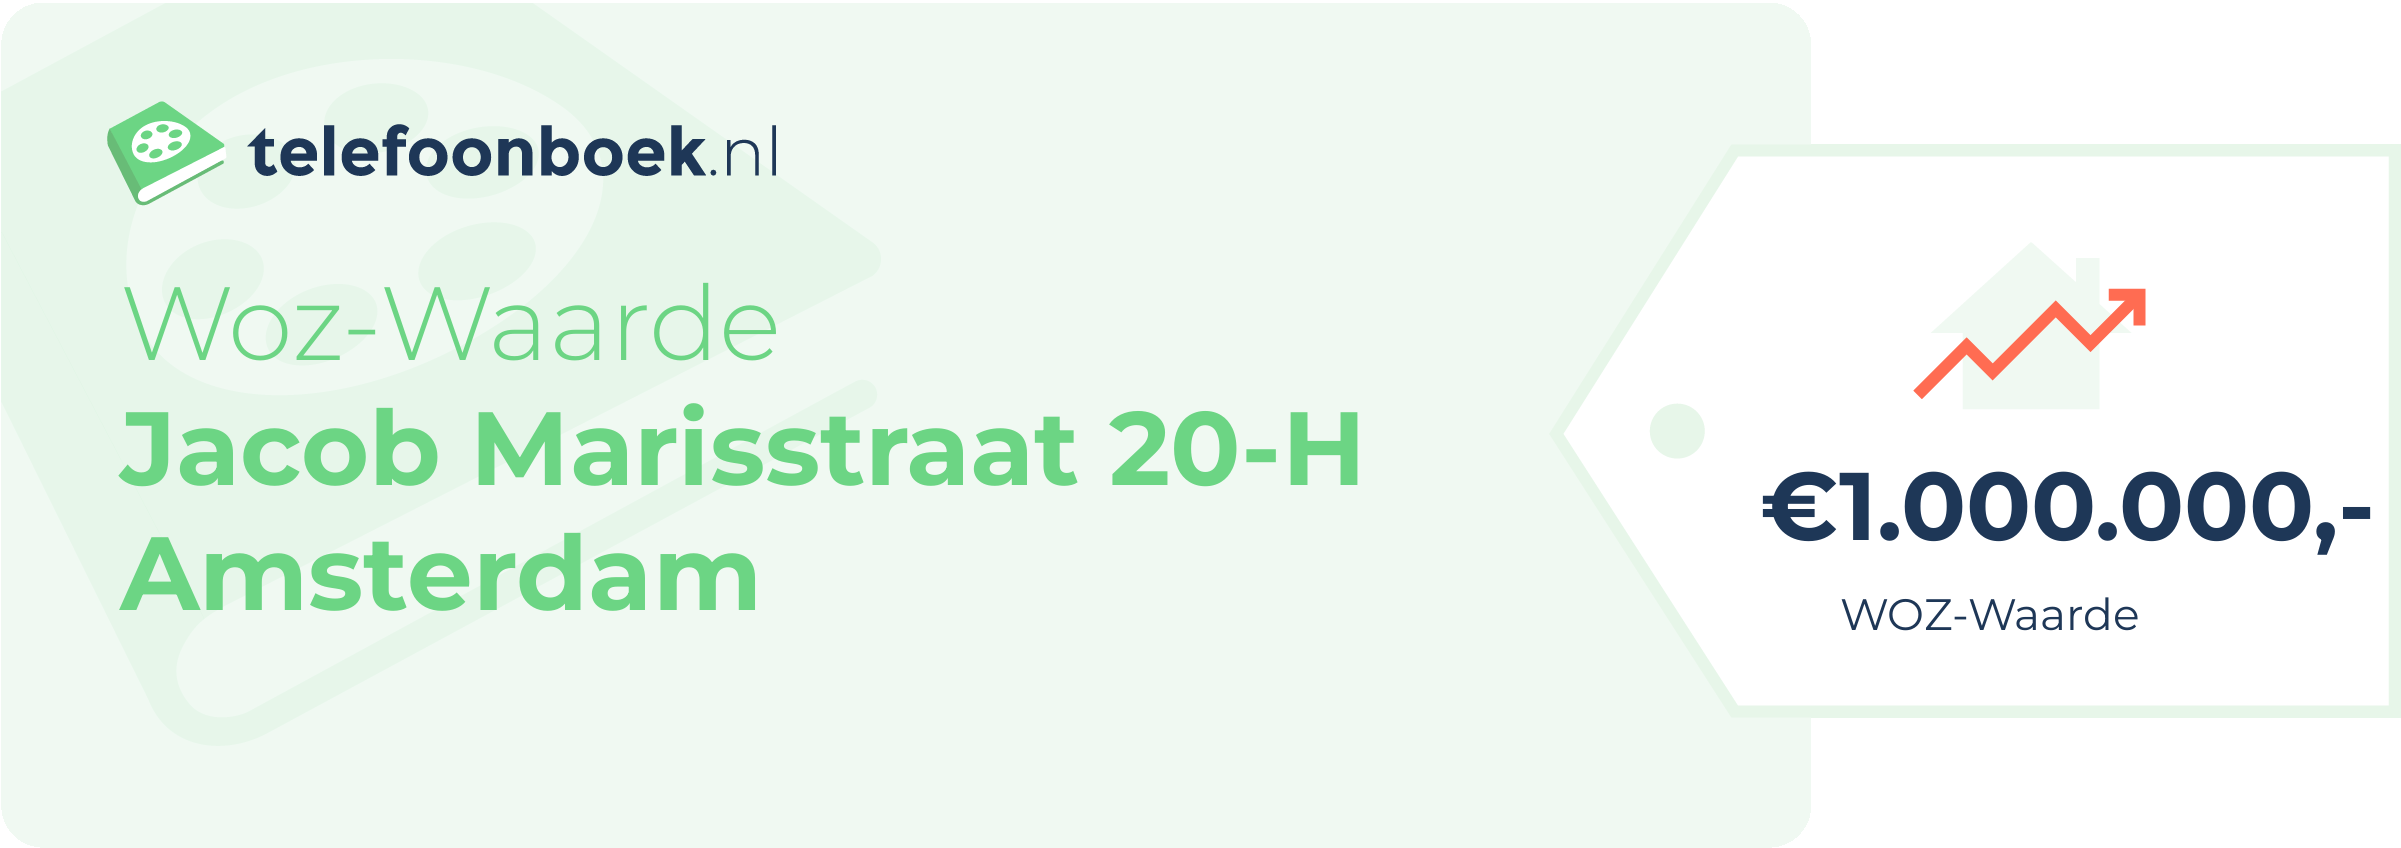 WOZ-waarde Jacob Marisstraat 20-H Amsterdam